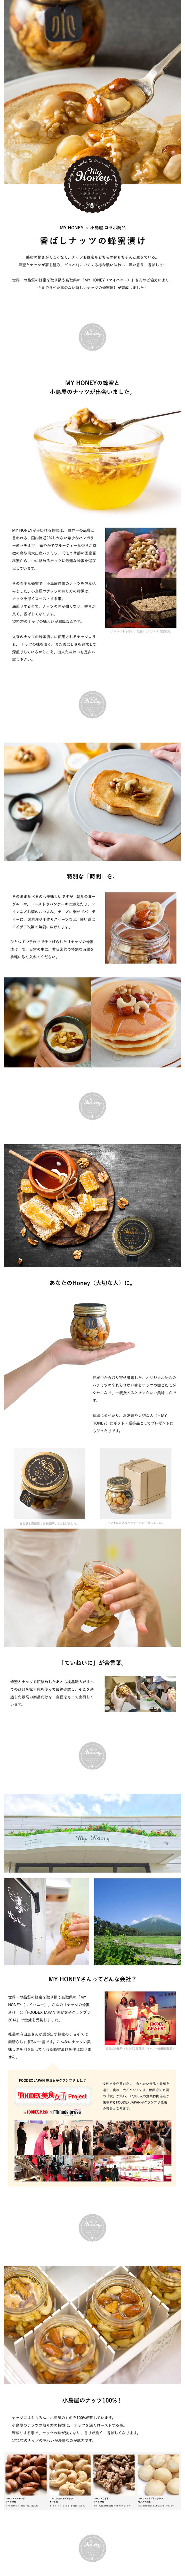 香ばしナッツの蜂蜜漬け_pc_1